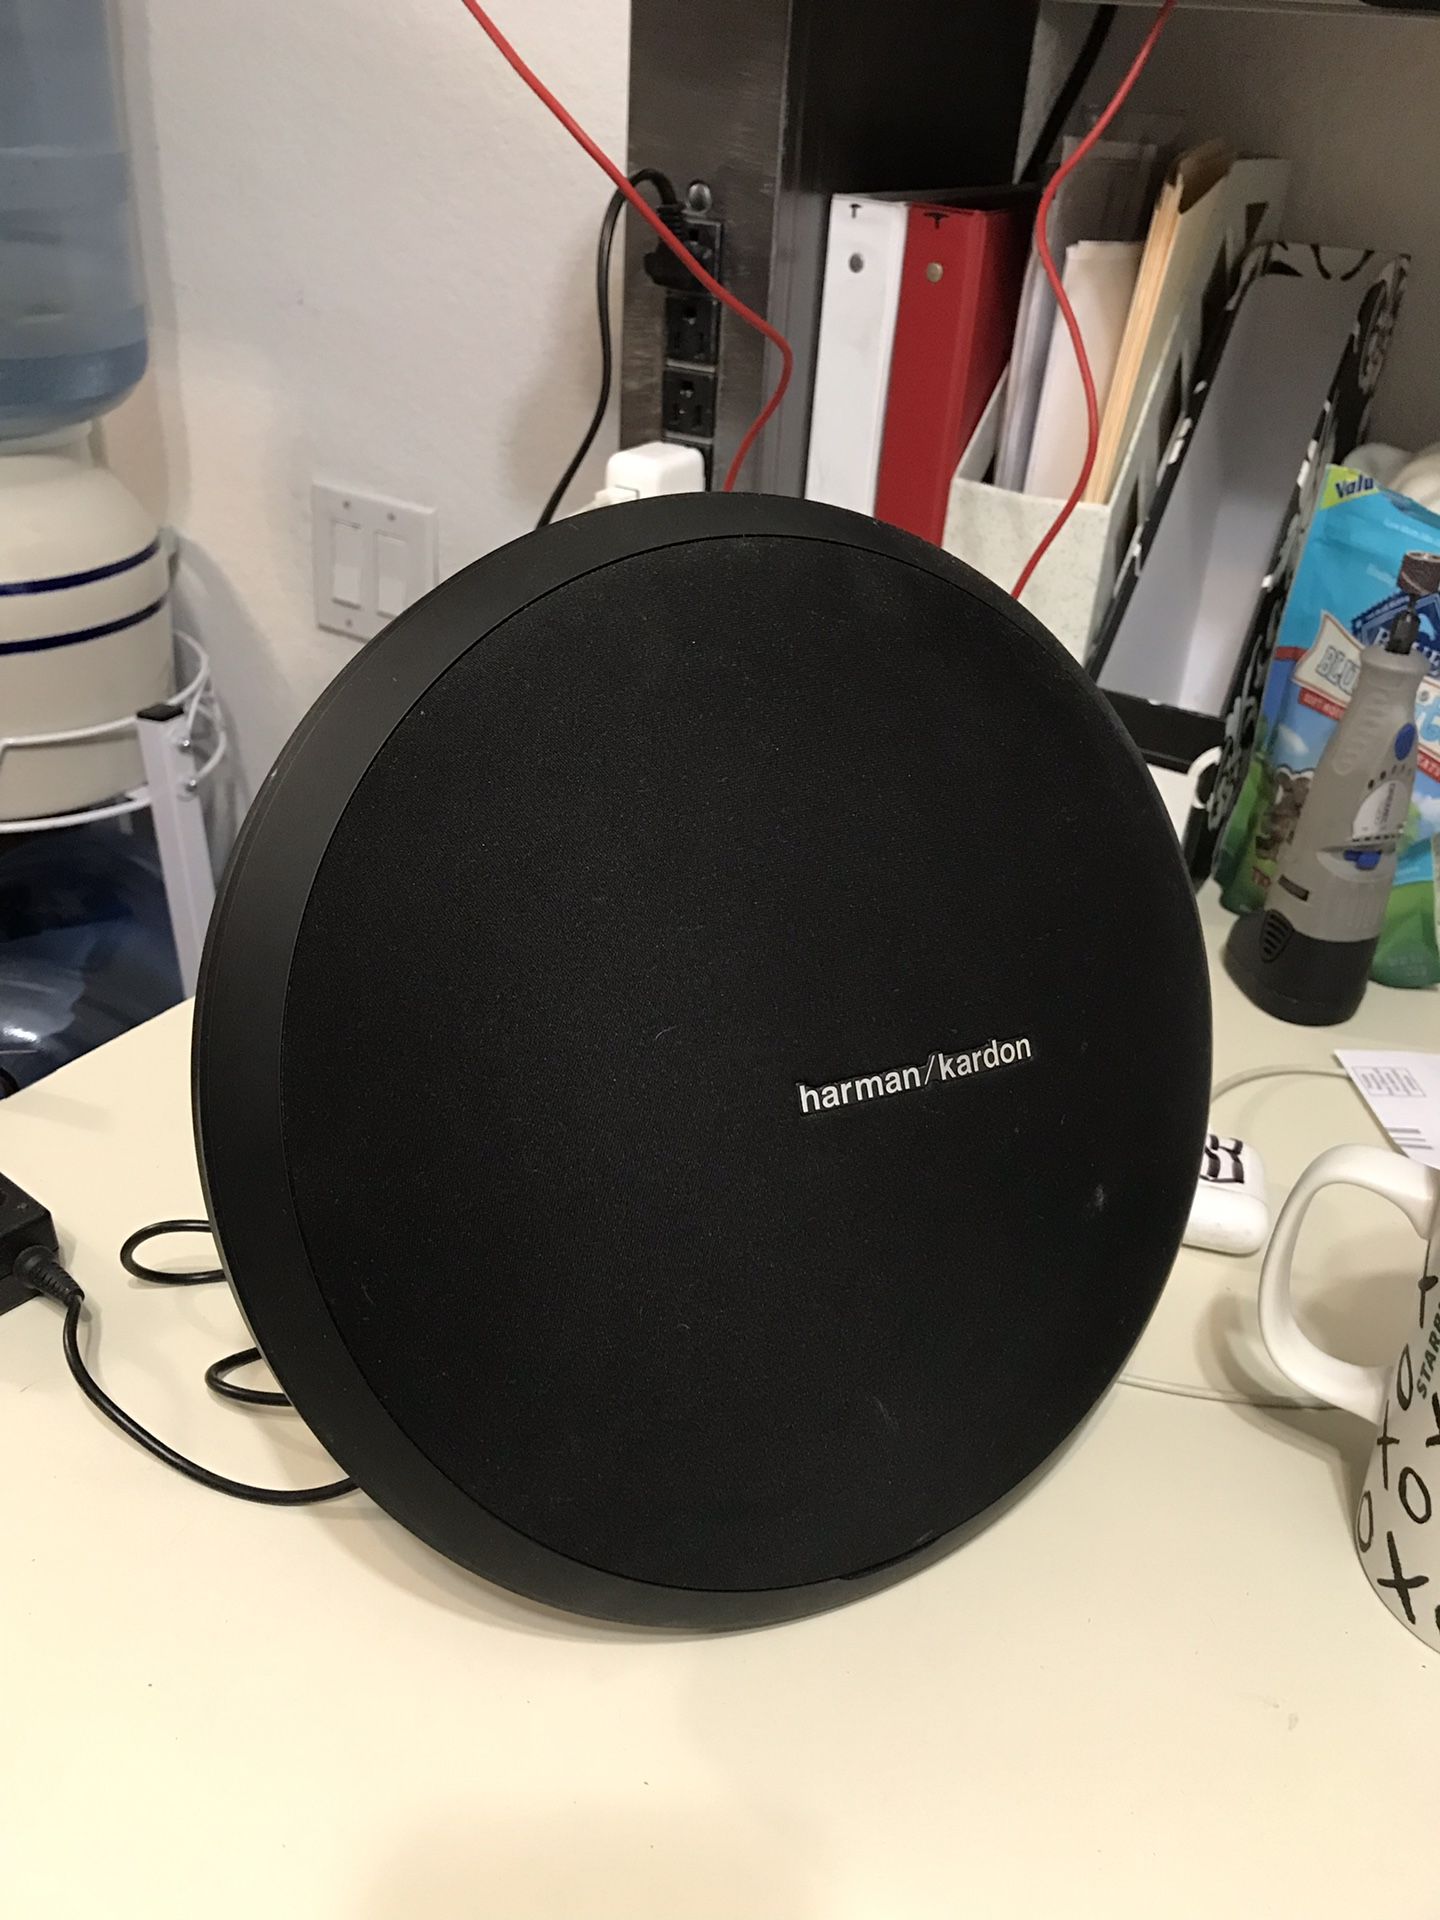 Harman/Kardon Bluetooth speaker